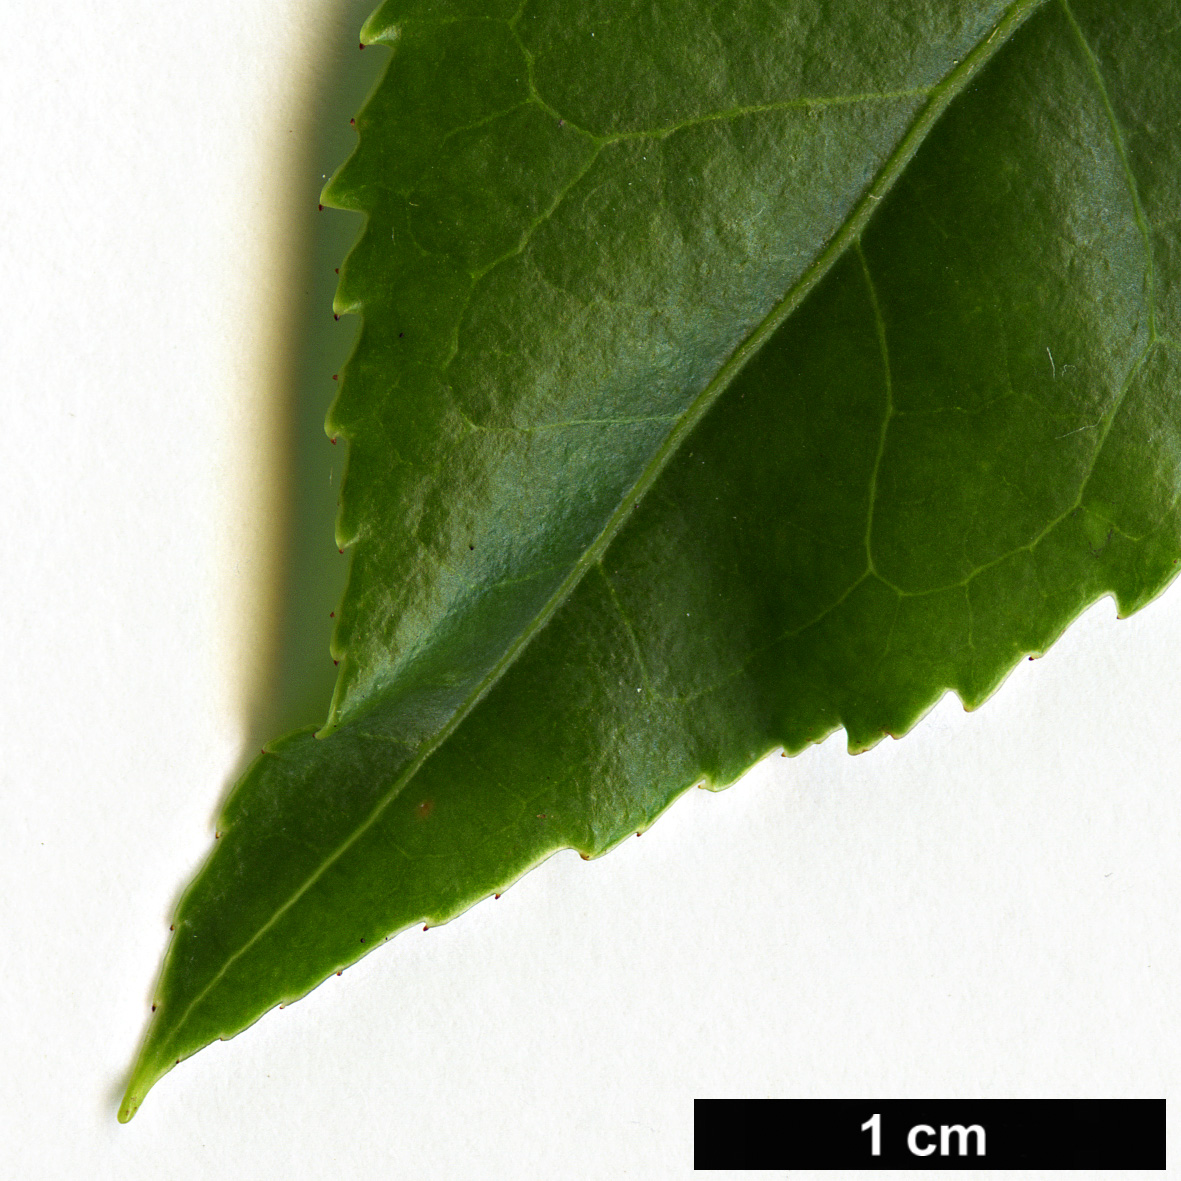 High resolution image: Family: Ericaceae - Genus: Vaccinium - Taxon: duclouxii